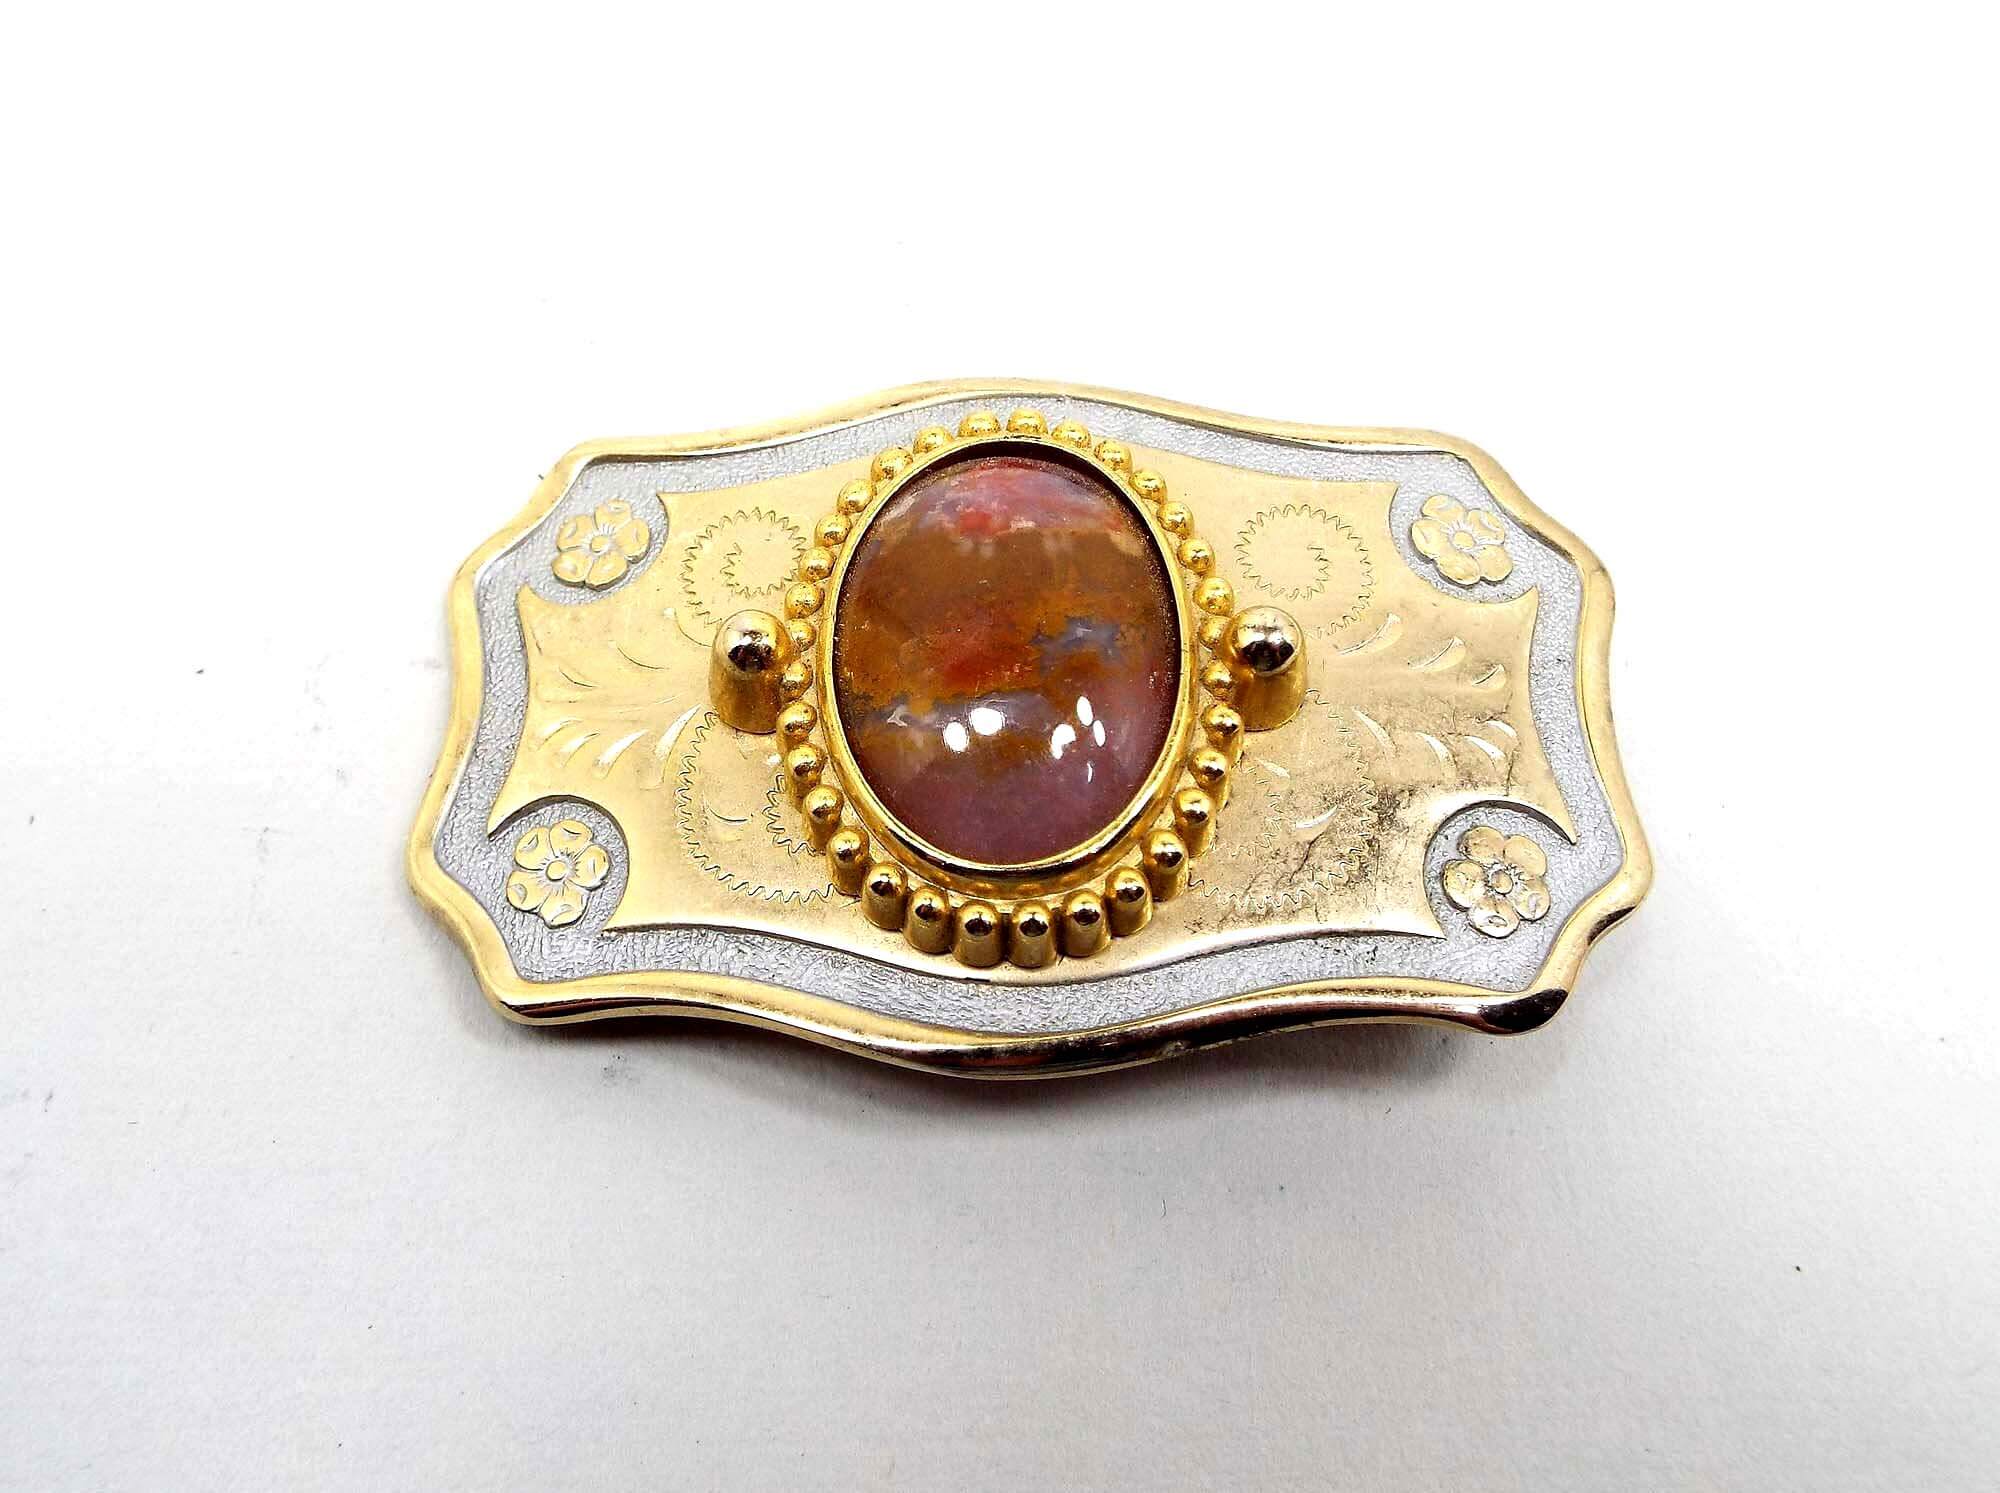 Smaller Sized Vintage Agate Gemstone Belt Buckle